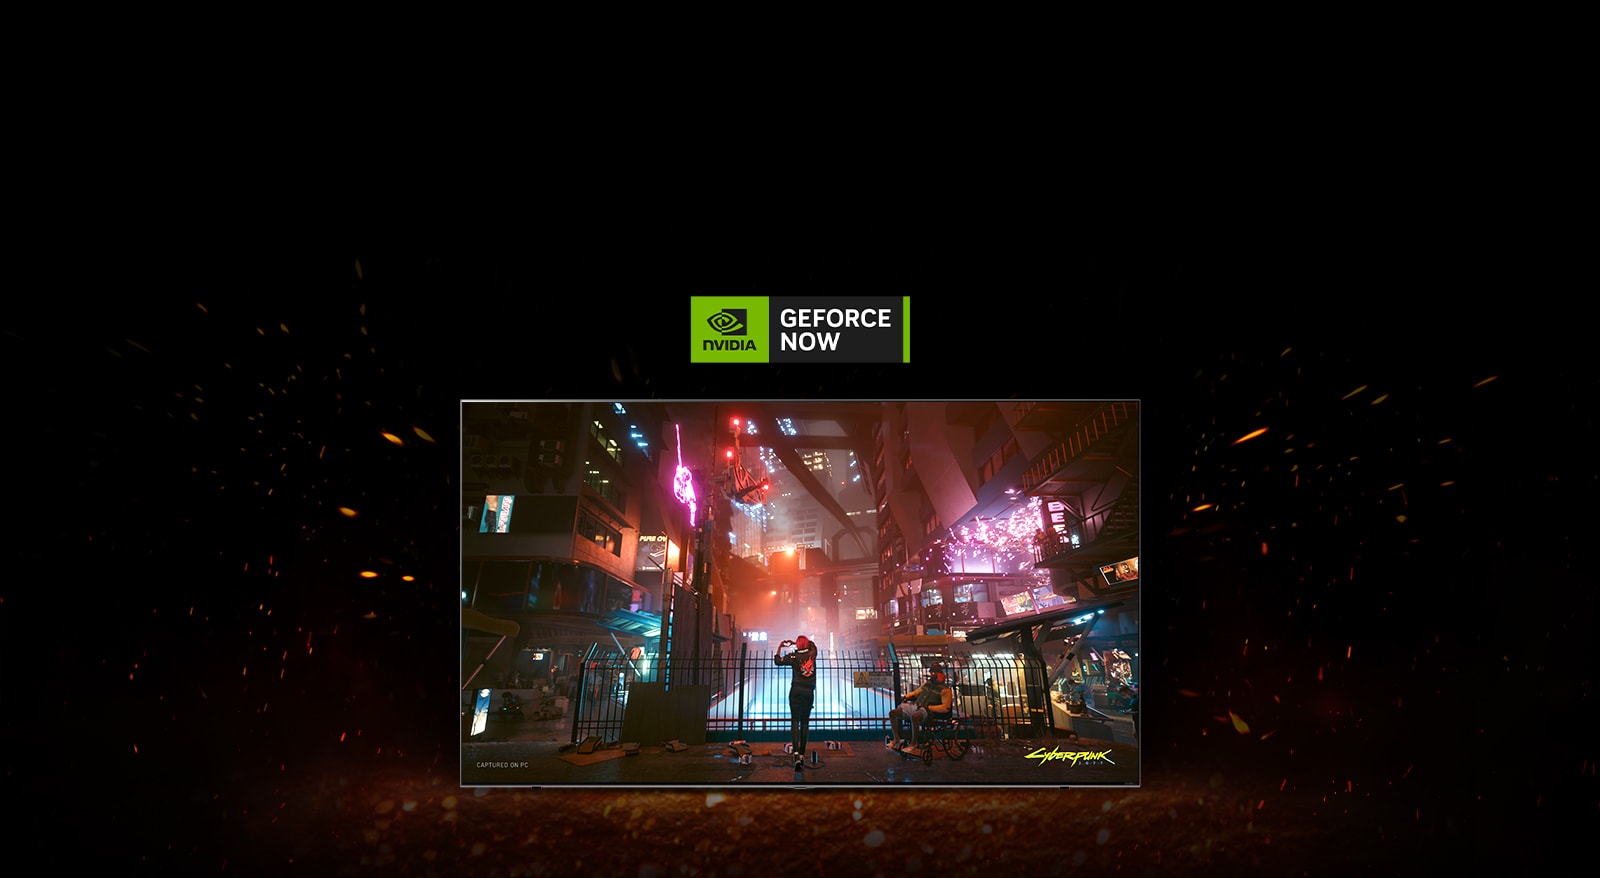 Навколо телевізора спалахує полум'я, і на ньому можна побачити екран гри Cyberpunk. У верхній частині телевізора можна побачити логотип Geforce Now.